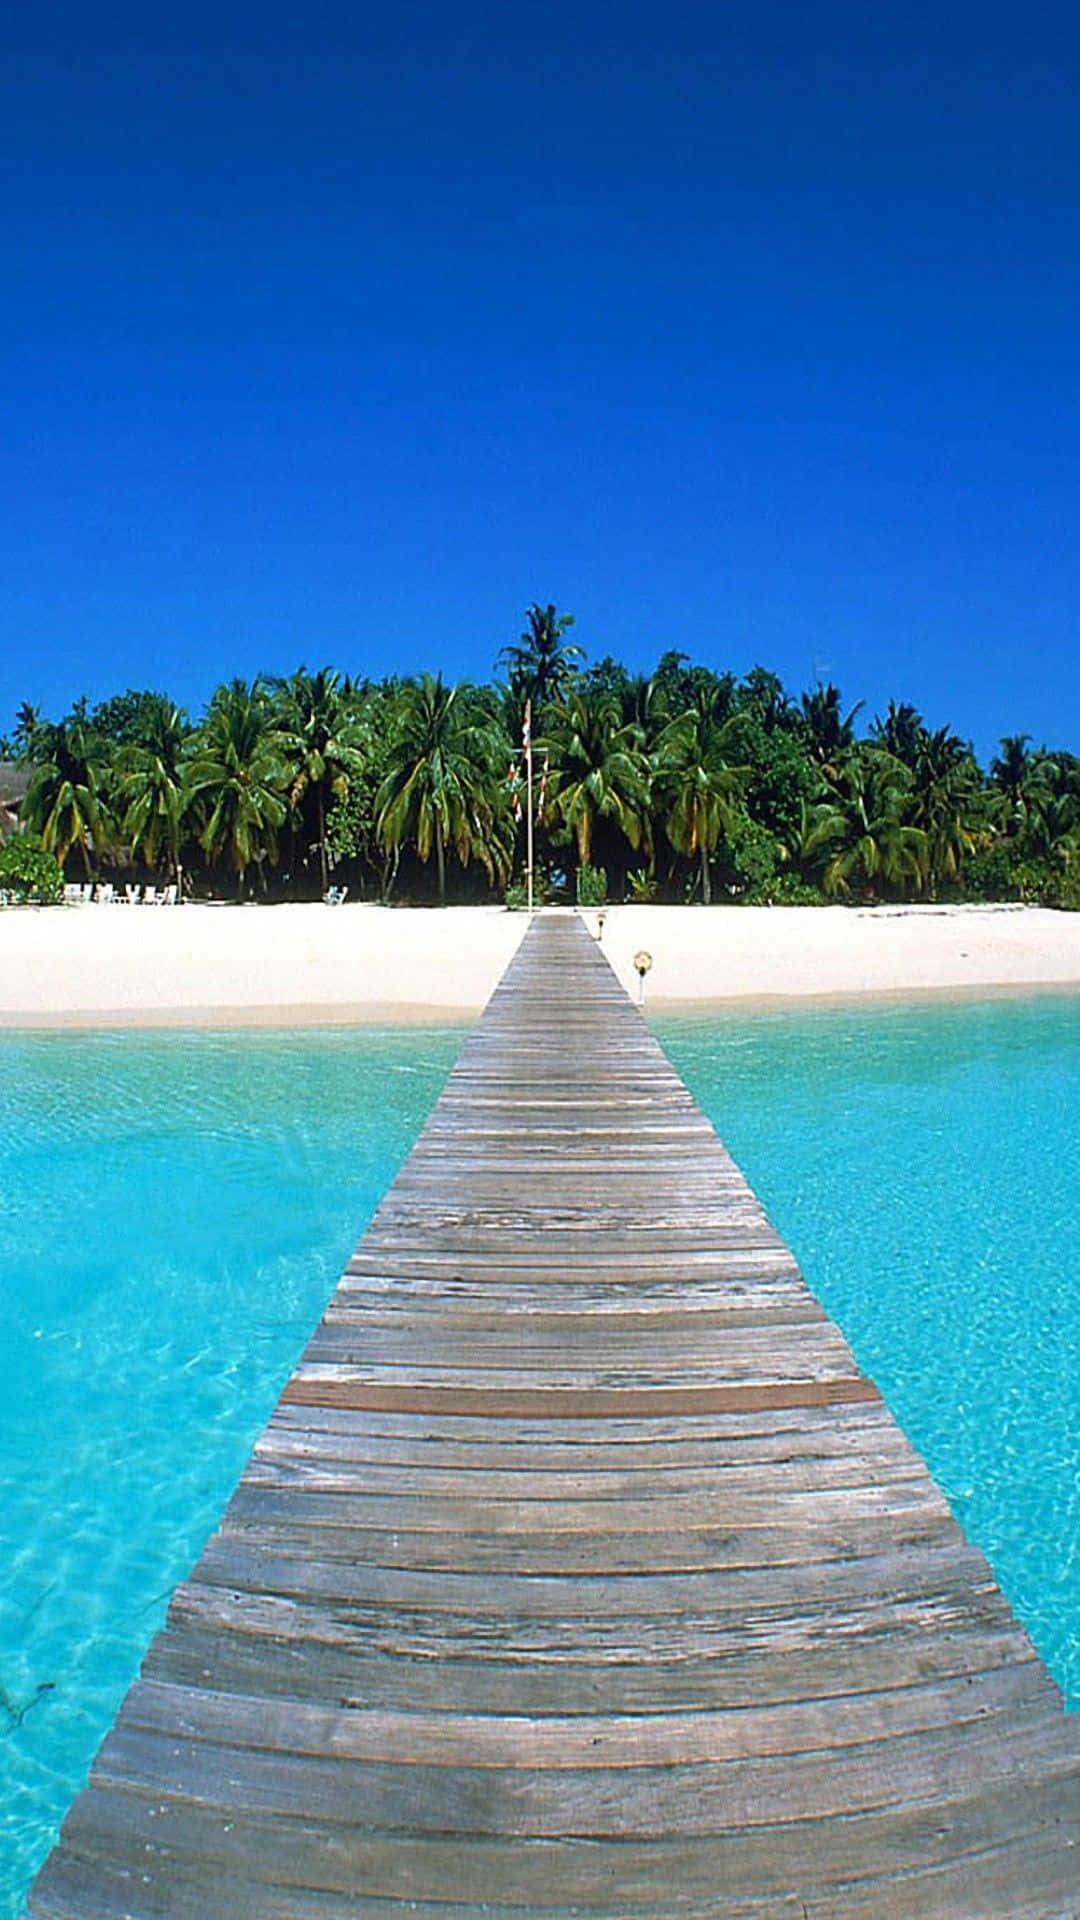 Imagendisfrutando De La Hermosa Playa Con Un Teléfono En La Mano. Fondo de pantalla